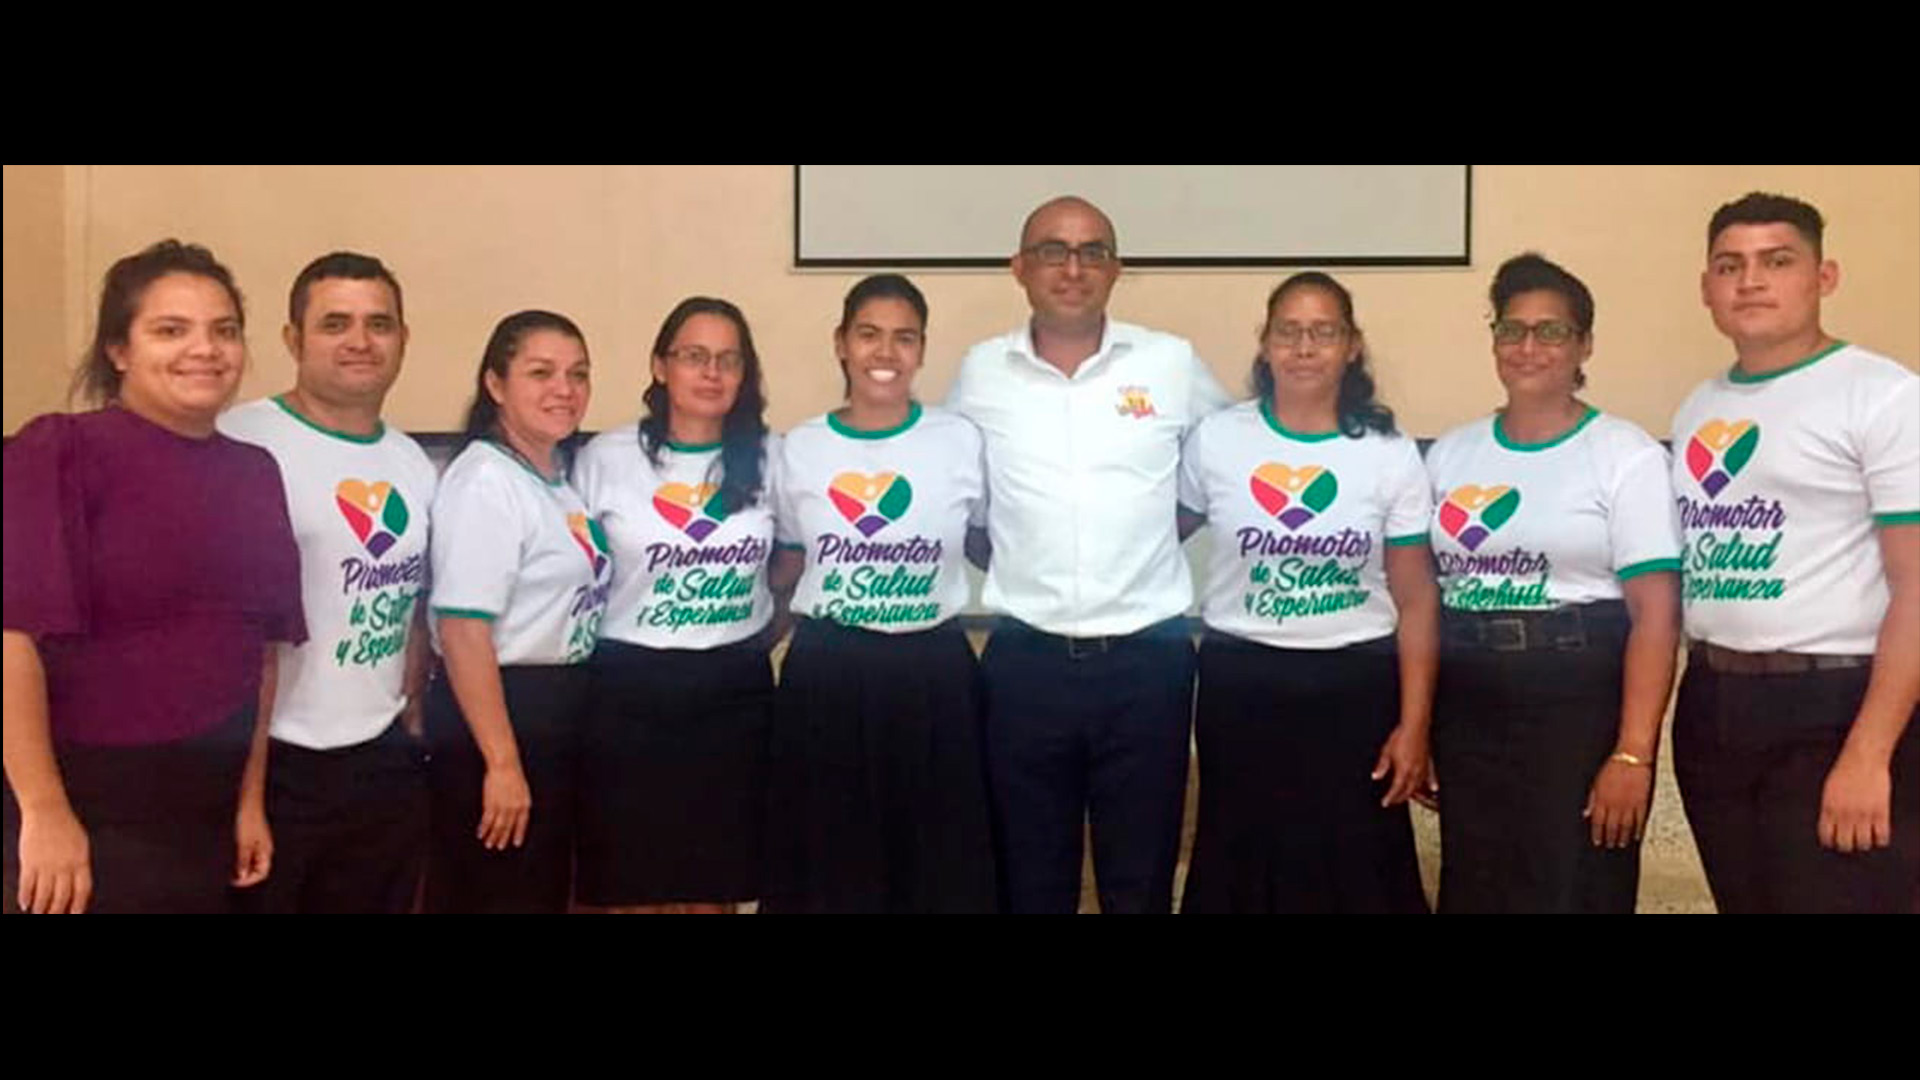 Adventistas en Centroamérica son capacitados como promotores de salud y esperanza